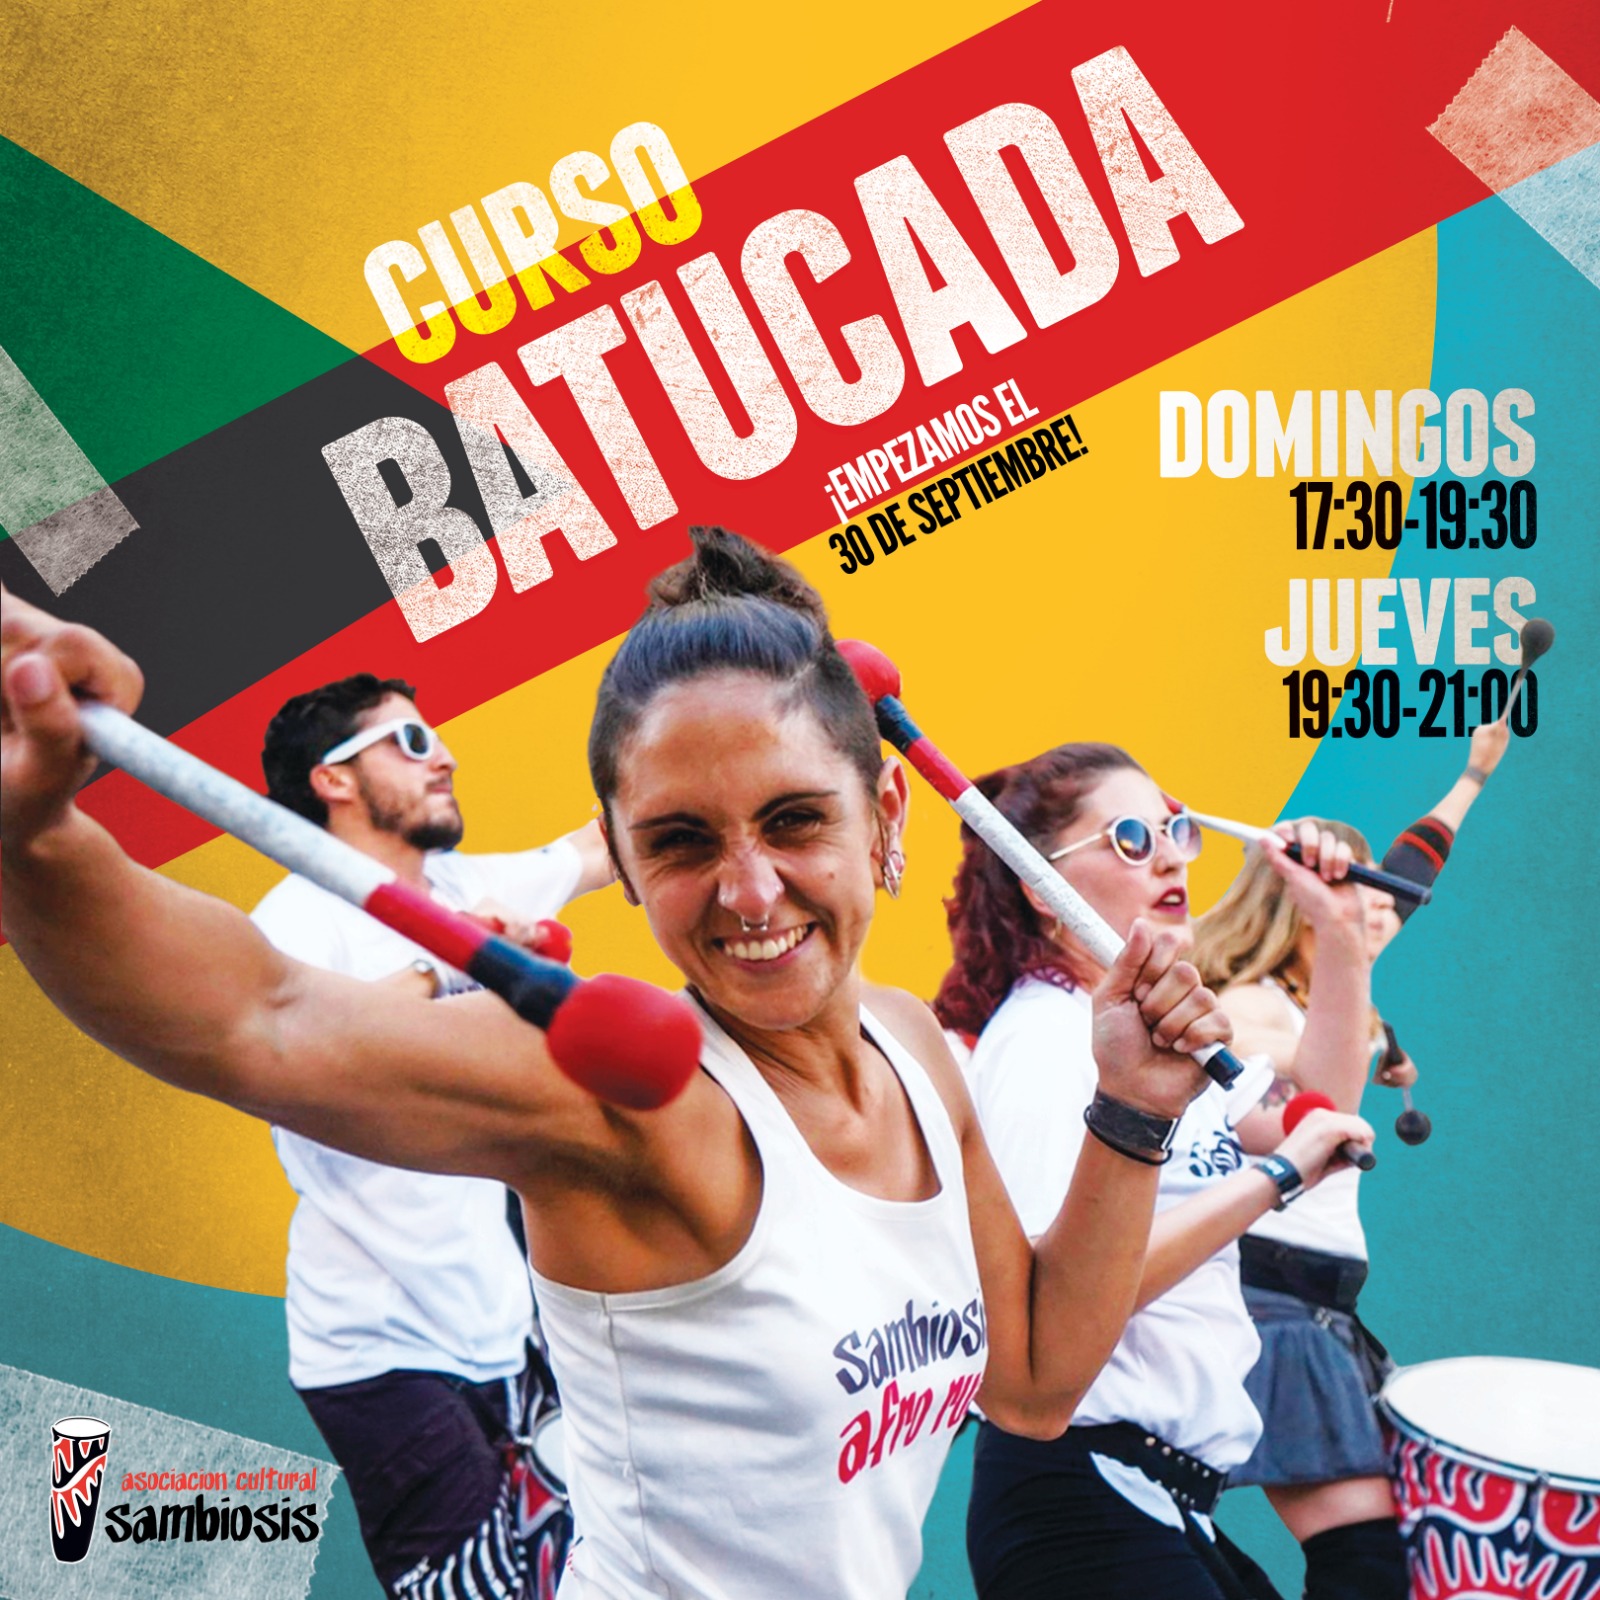 Cartel Curso de Batucada (Percusión Afrobrasileña) - Escuela Sambiosis